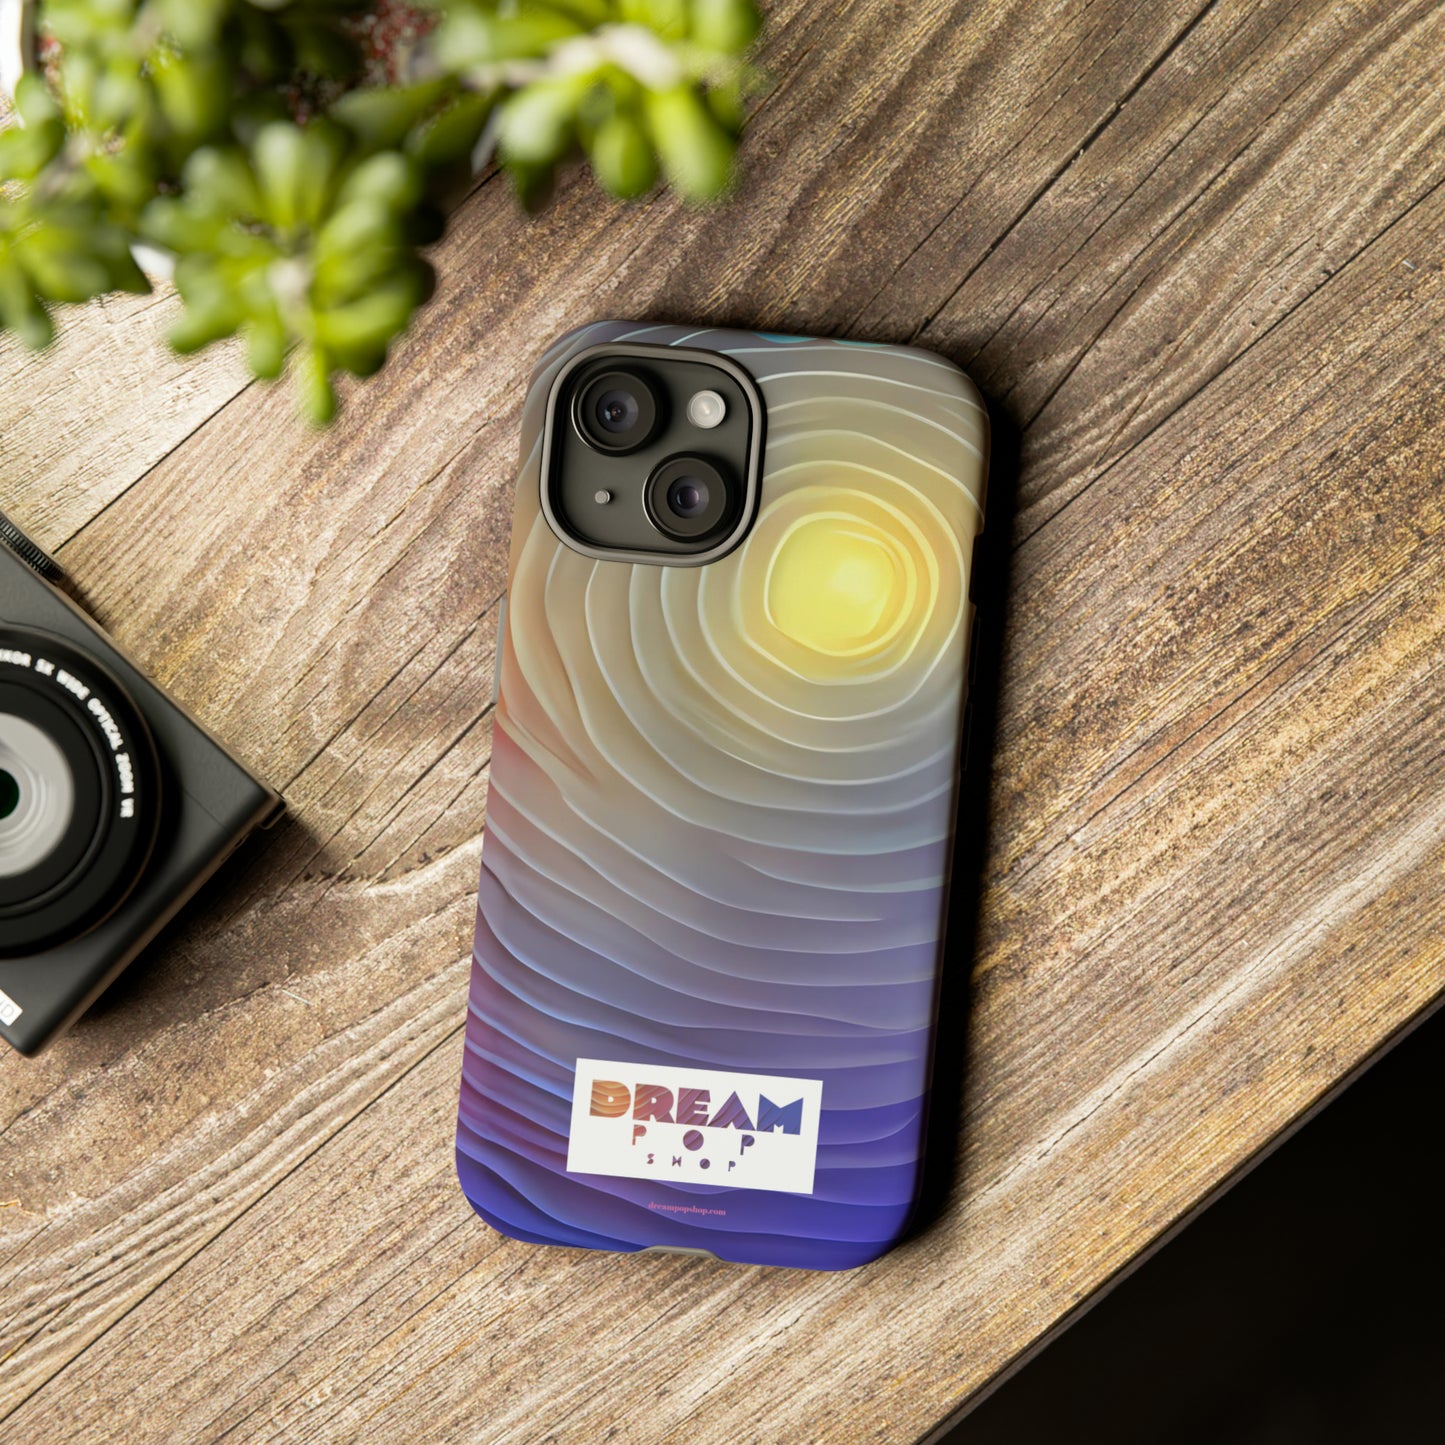 Dream Pop Shop Mobile Phone Tough Cases